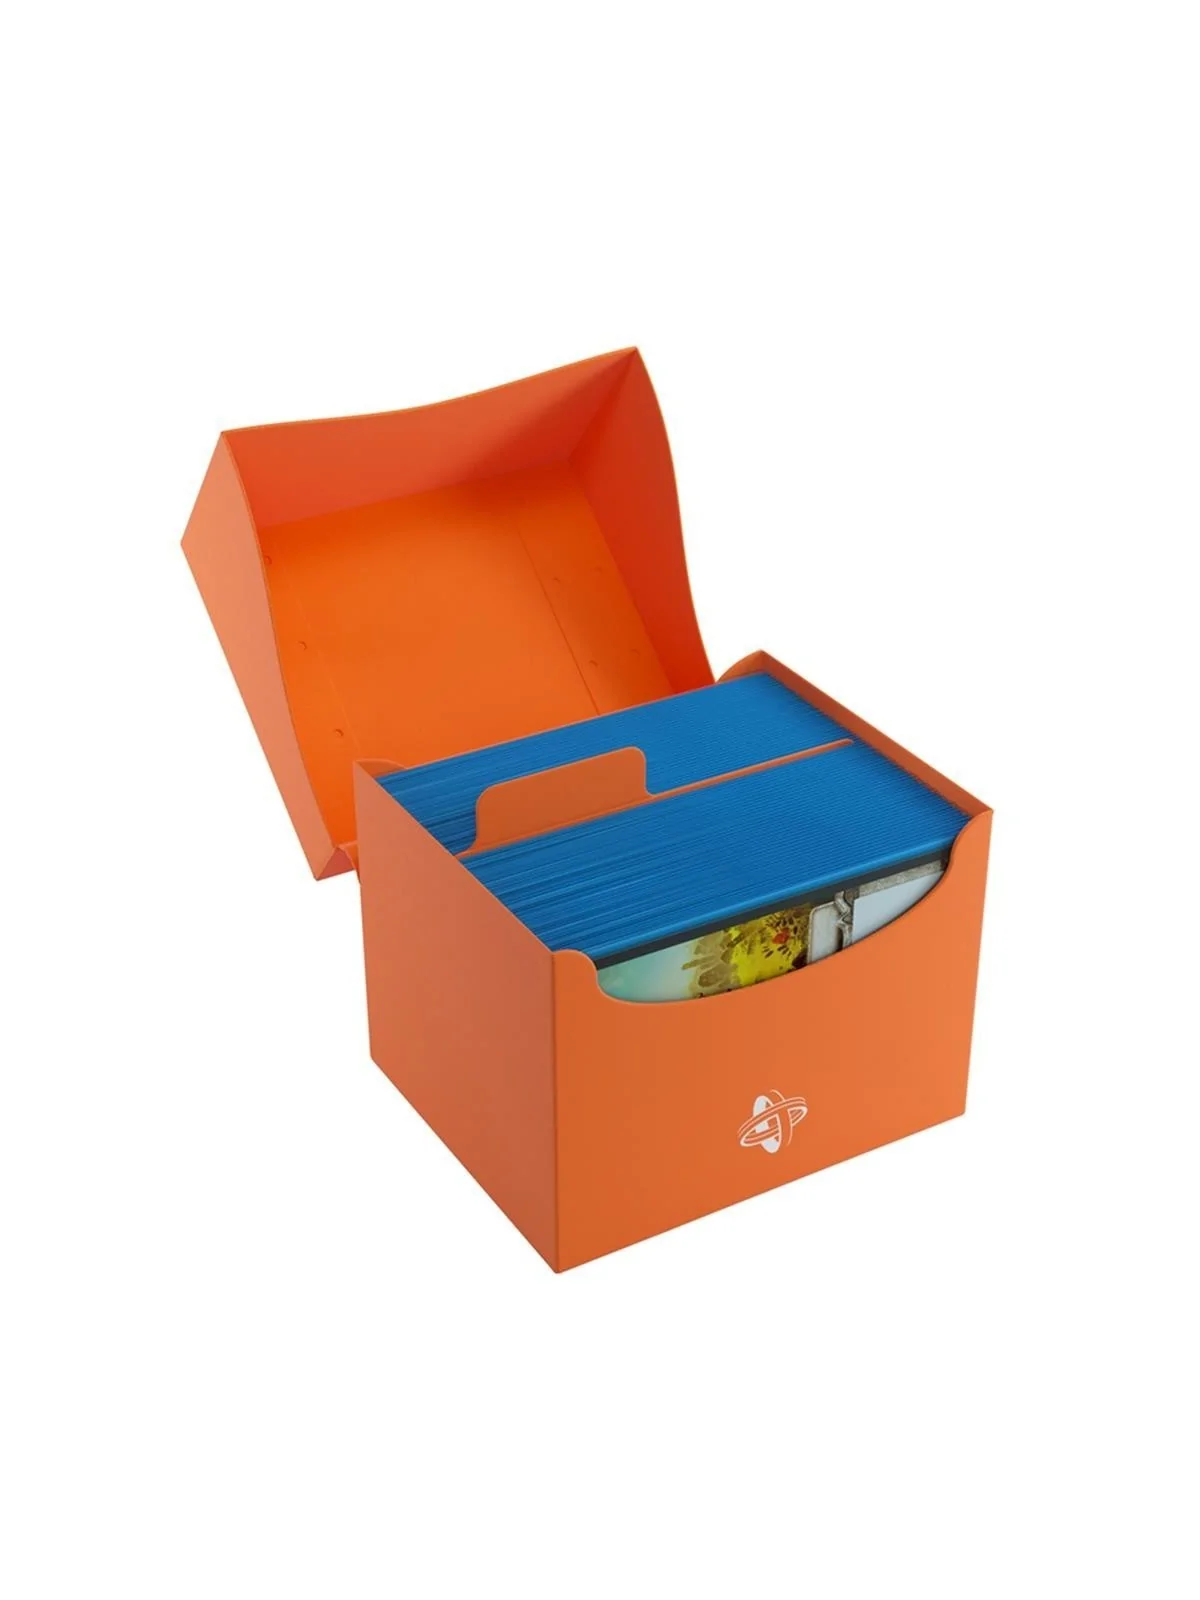 Comprar Side Holder 100+ XL Orange barato al mejor precio 3,32 € de Ga